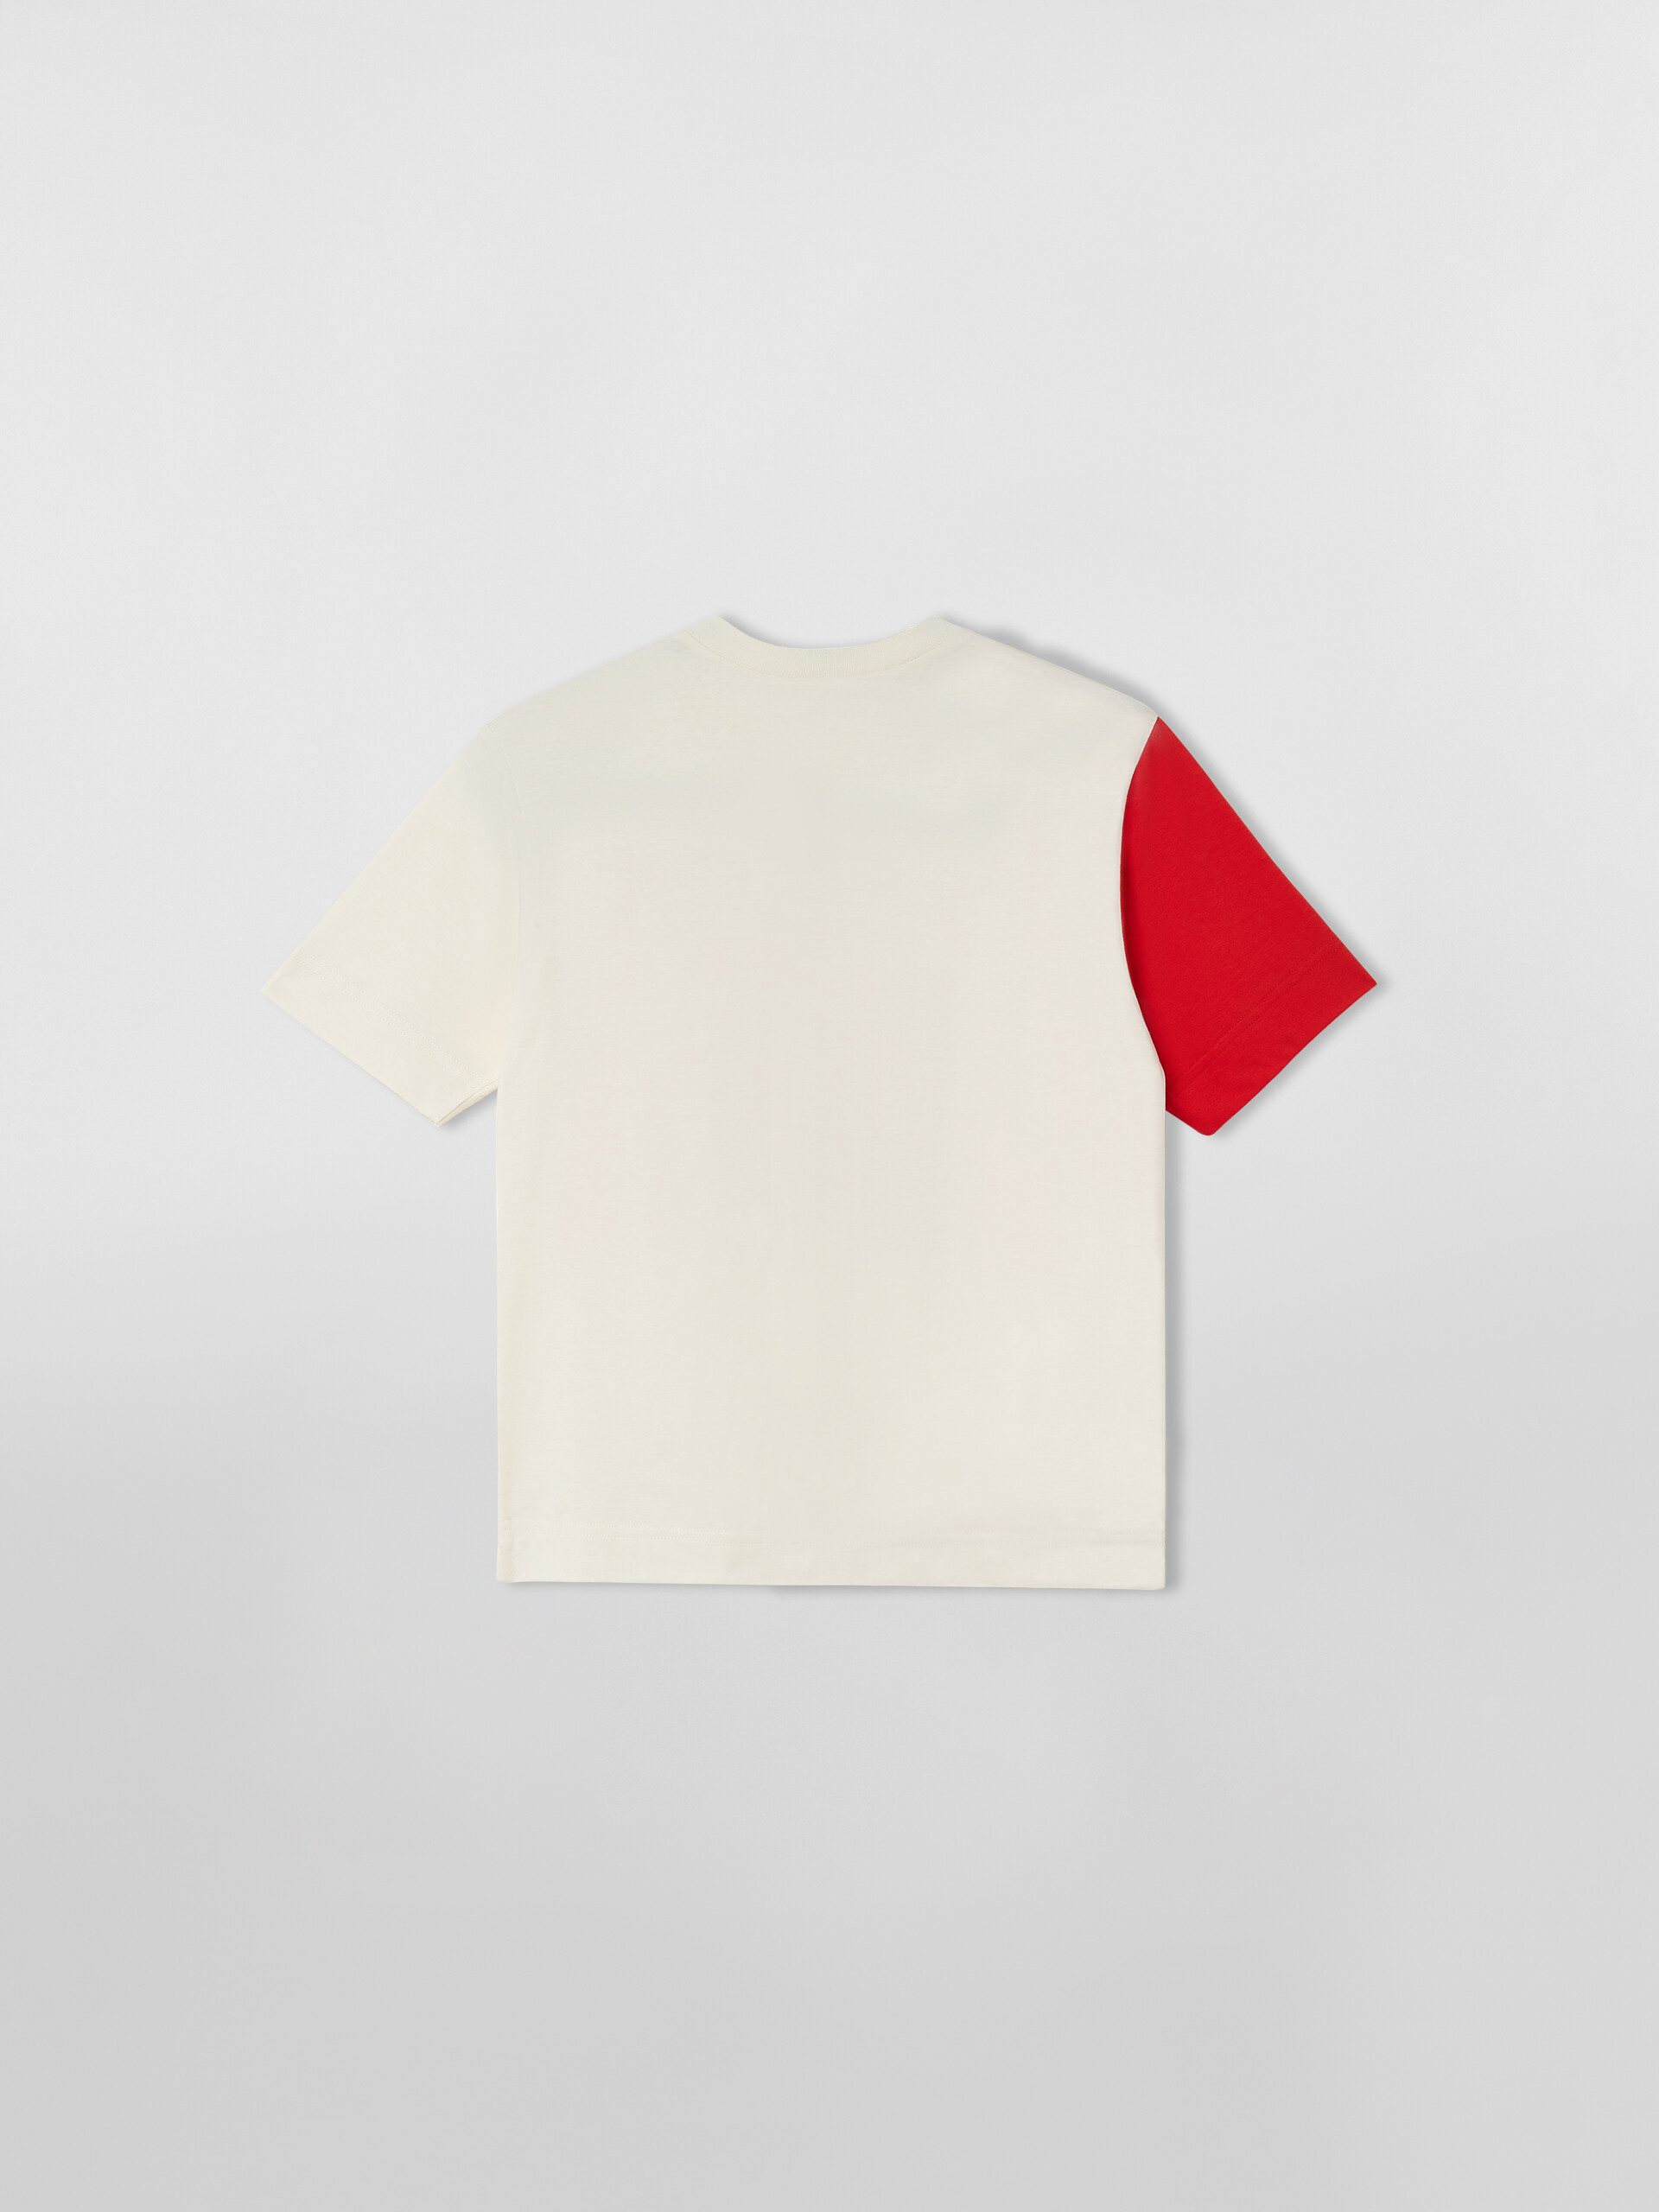 ZWEIFARBIGES T-SHIRT MIT GROSSEM „M“ AUF DER VORDERSEITE - T-shirts - Image 2